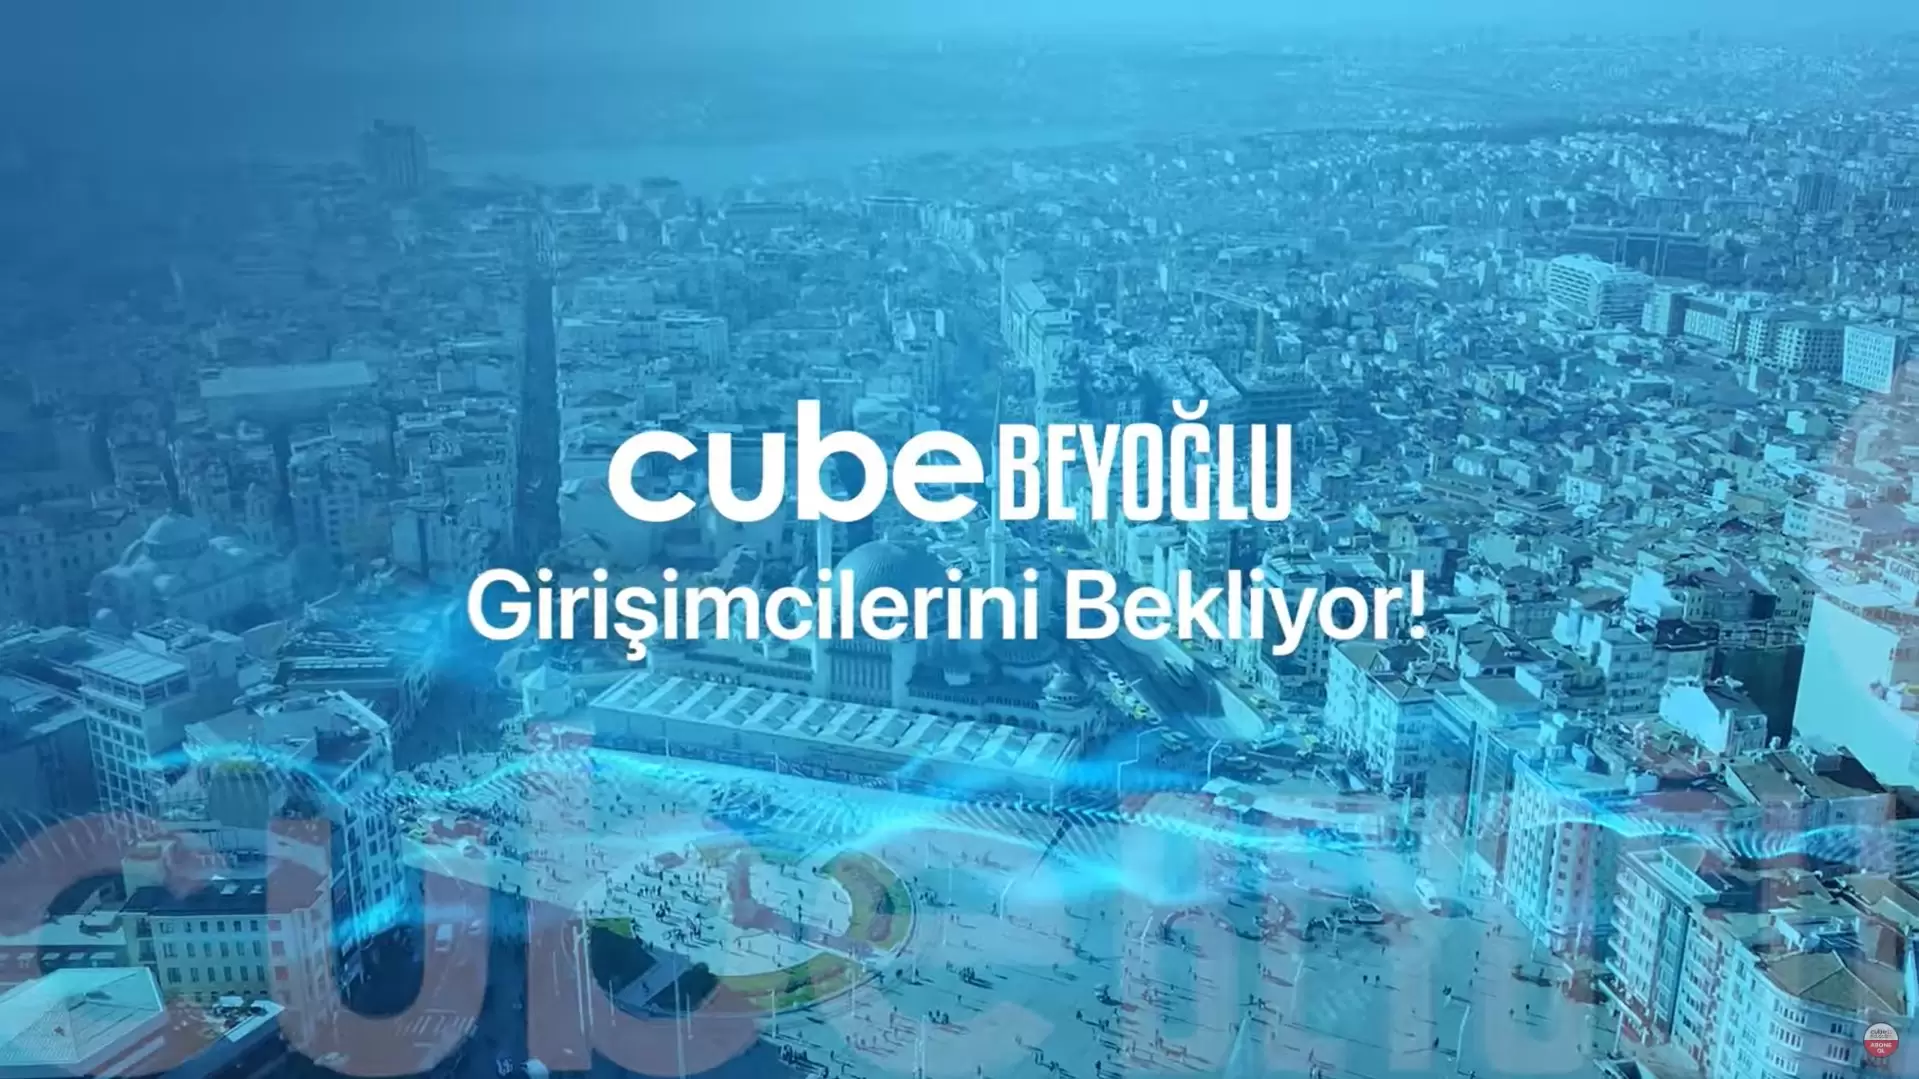 İlk Uydu Kuluçka Merkezi ‘Cube Beyoğlu’ Açılıyor